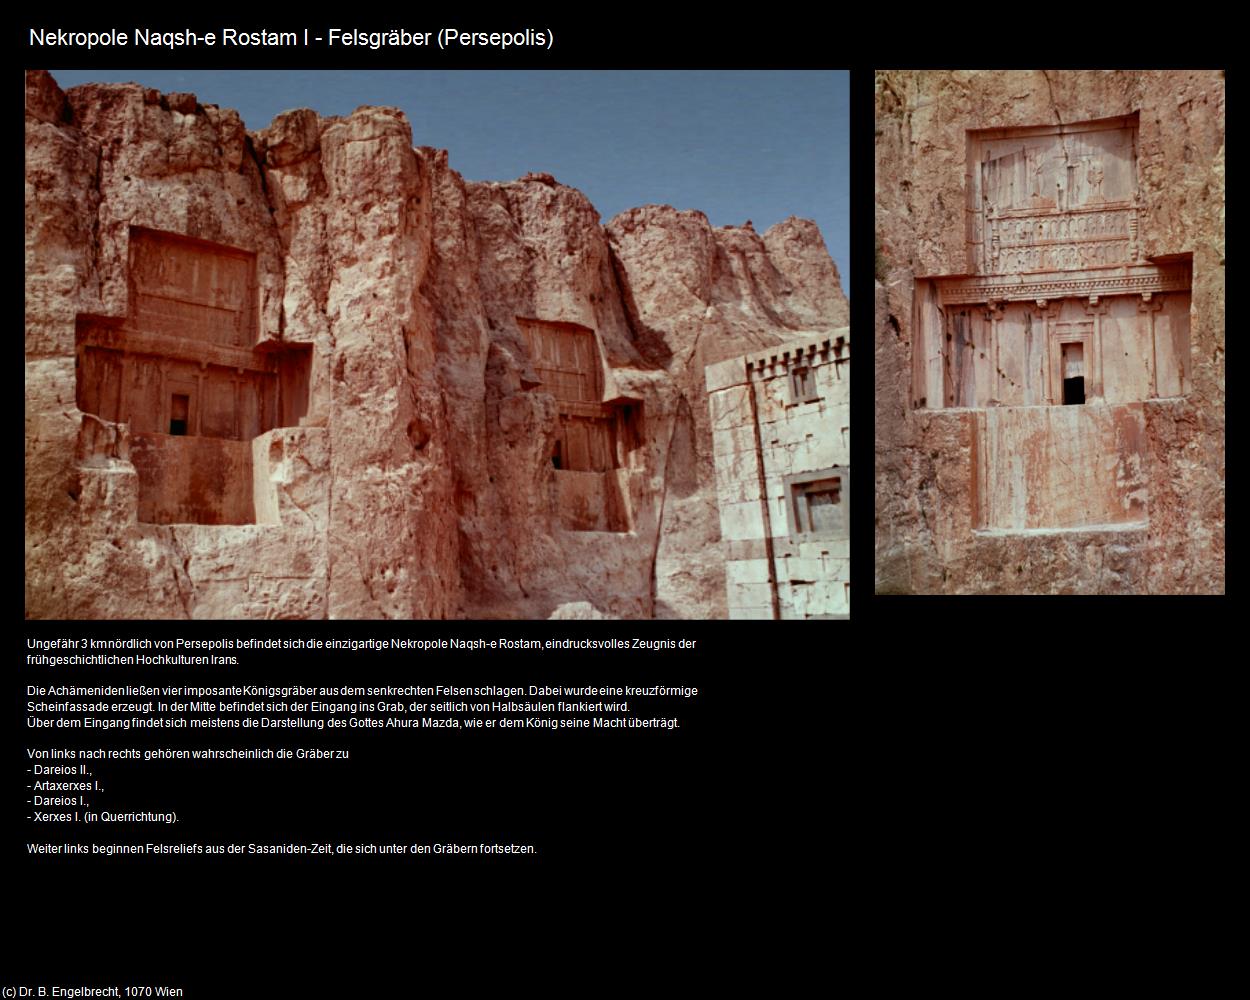 Nekropole Naqsh-e Rostam I (Persepolis) in Iran